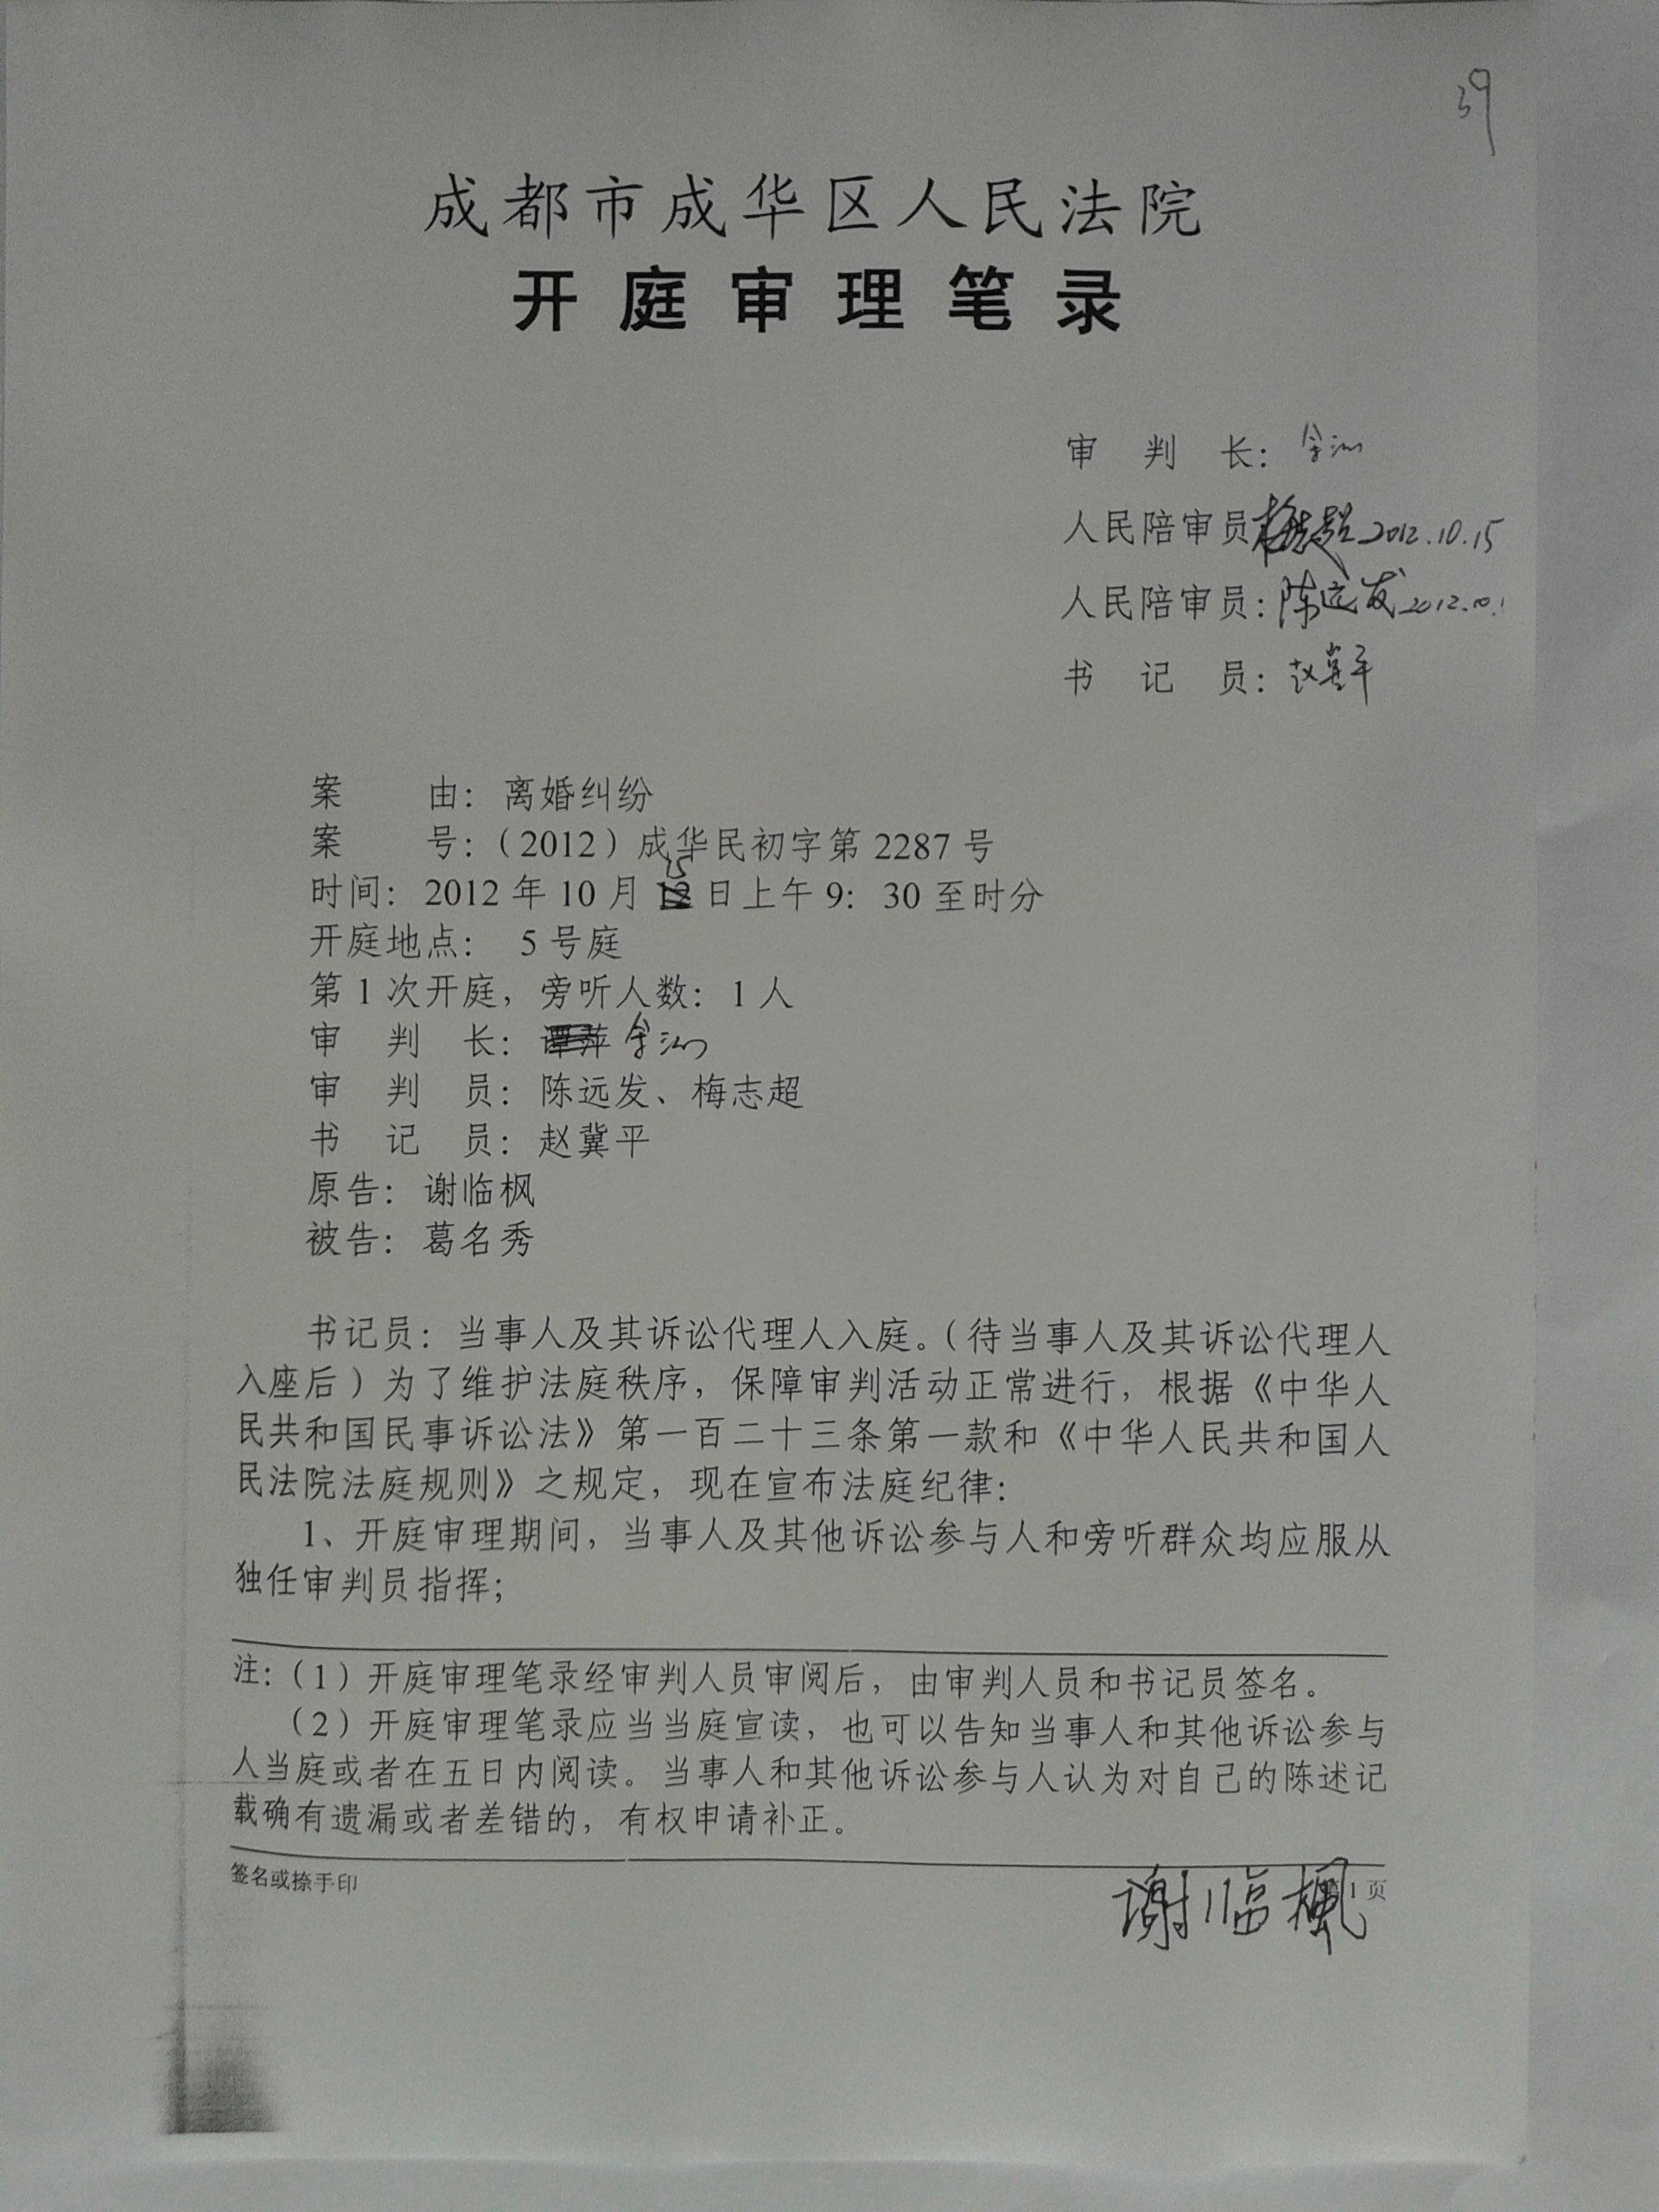 2012-10-15  虚假离婚庭审笔录1 (发网站).jpg